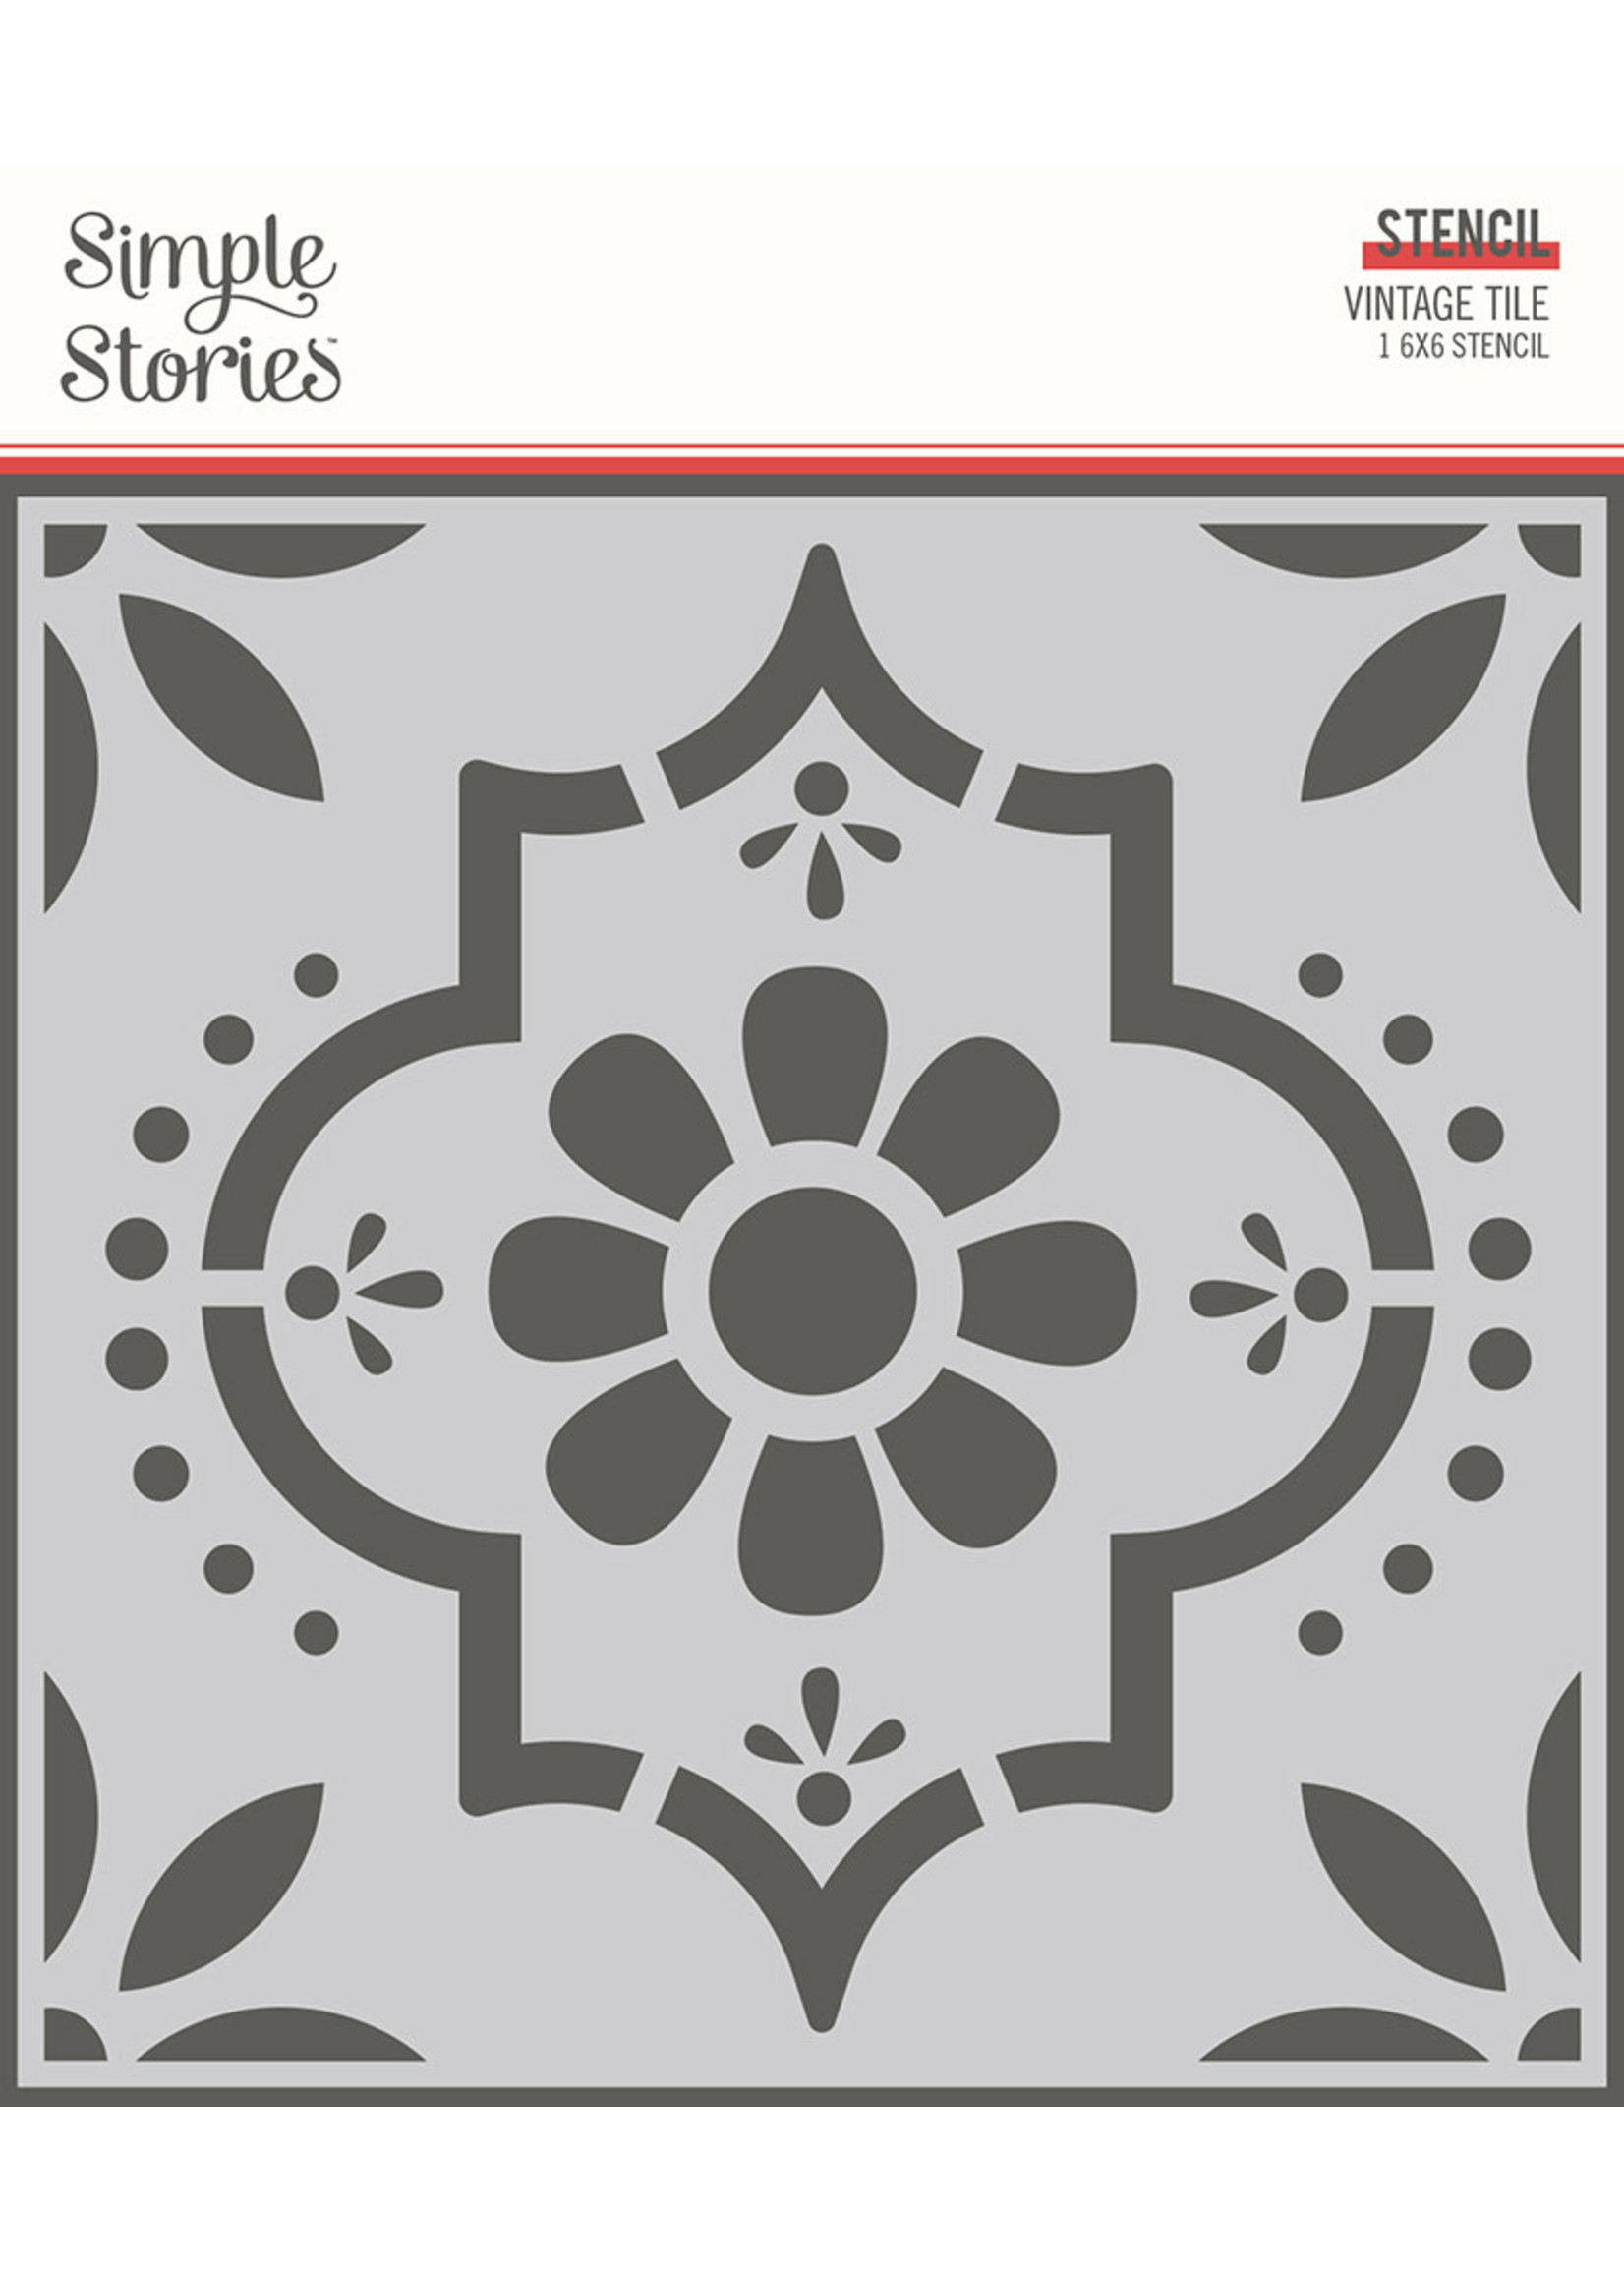 Simple Stories Apron Strings: 6x6 Stencil- Vintage Tile